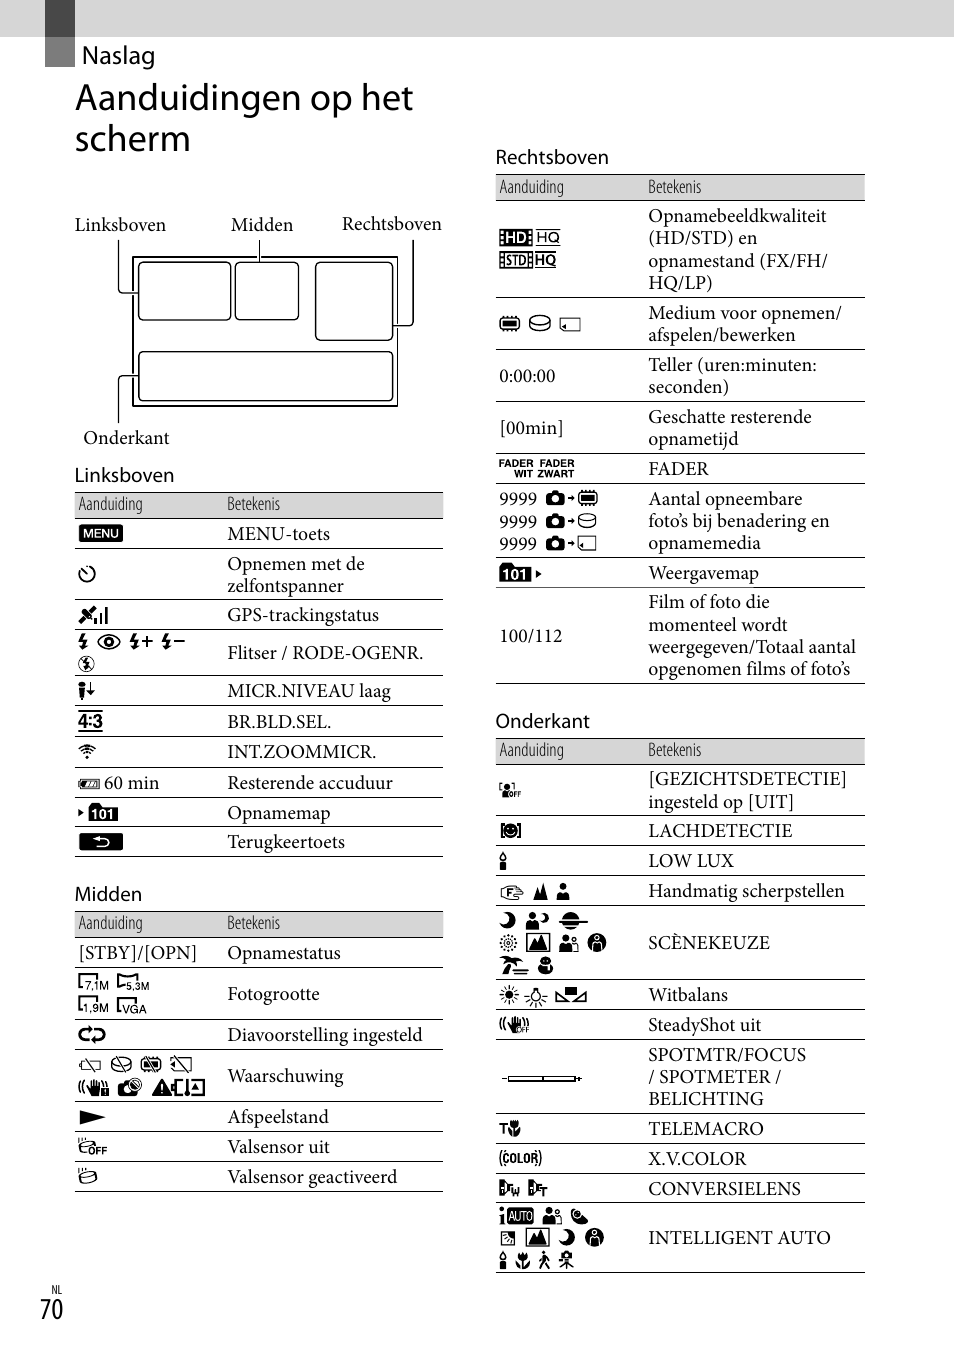 Naslag, Aanduidingen op het scherm | Sony HDR-CX305E Benutzerhandbuch | Seite 222 / 303